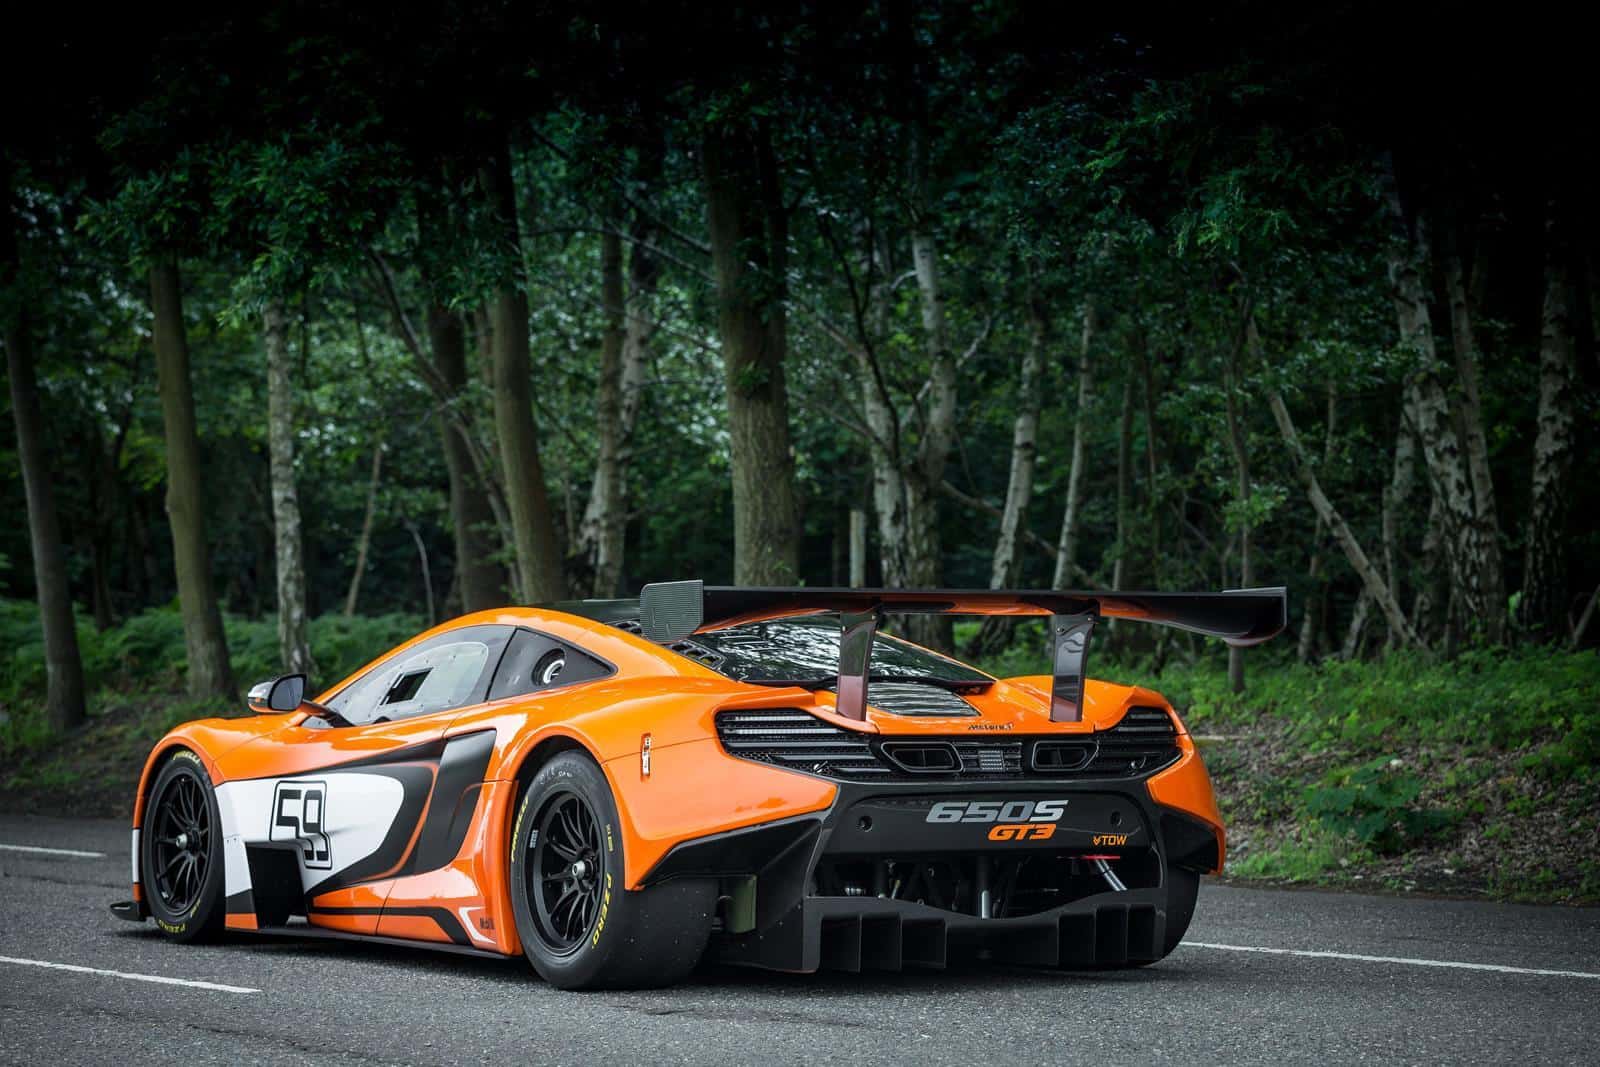 650S-GT3-McLaren 10